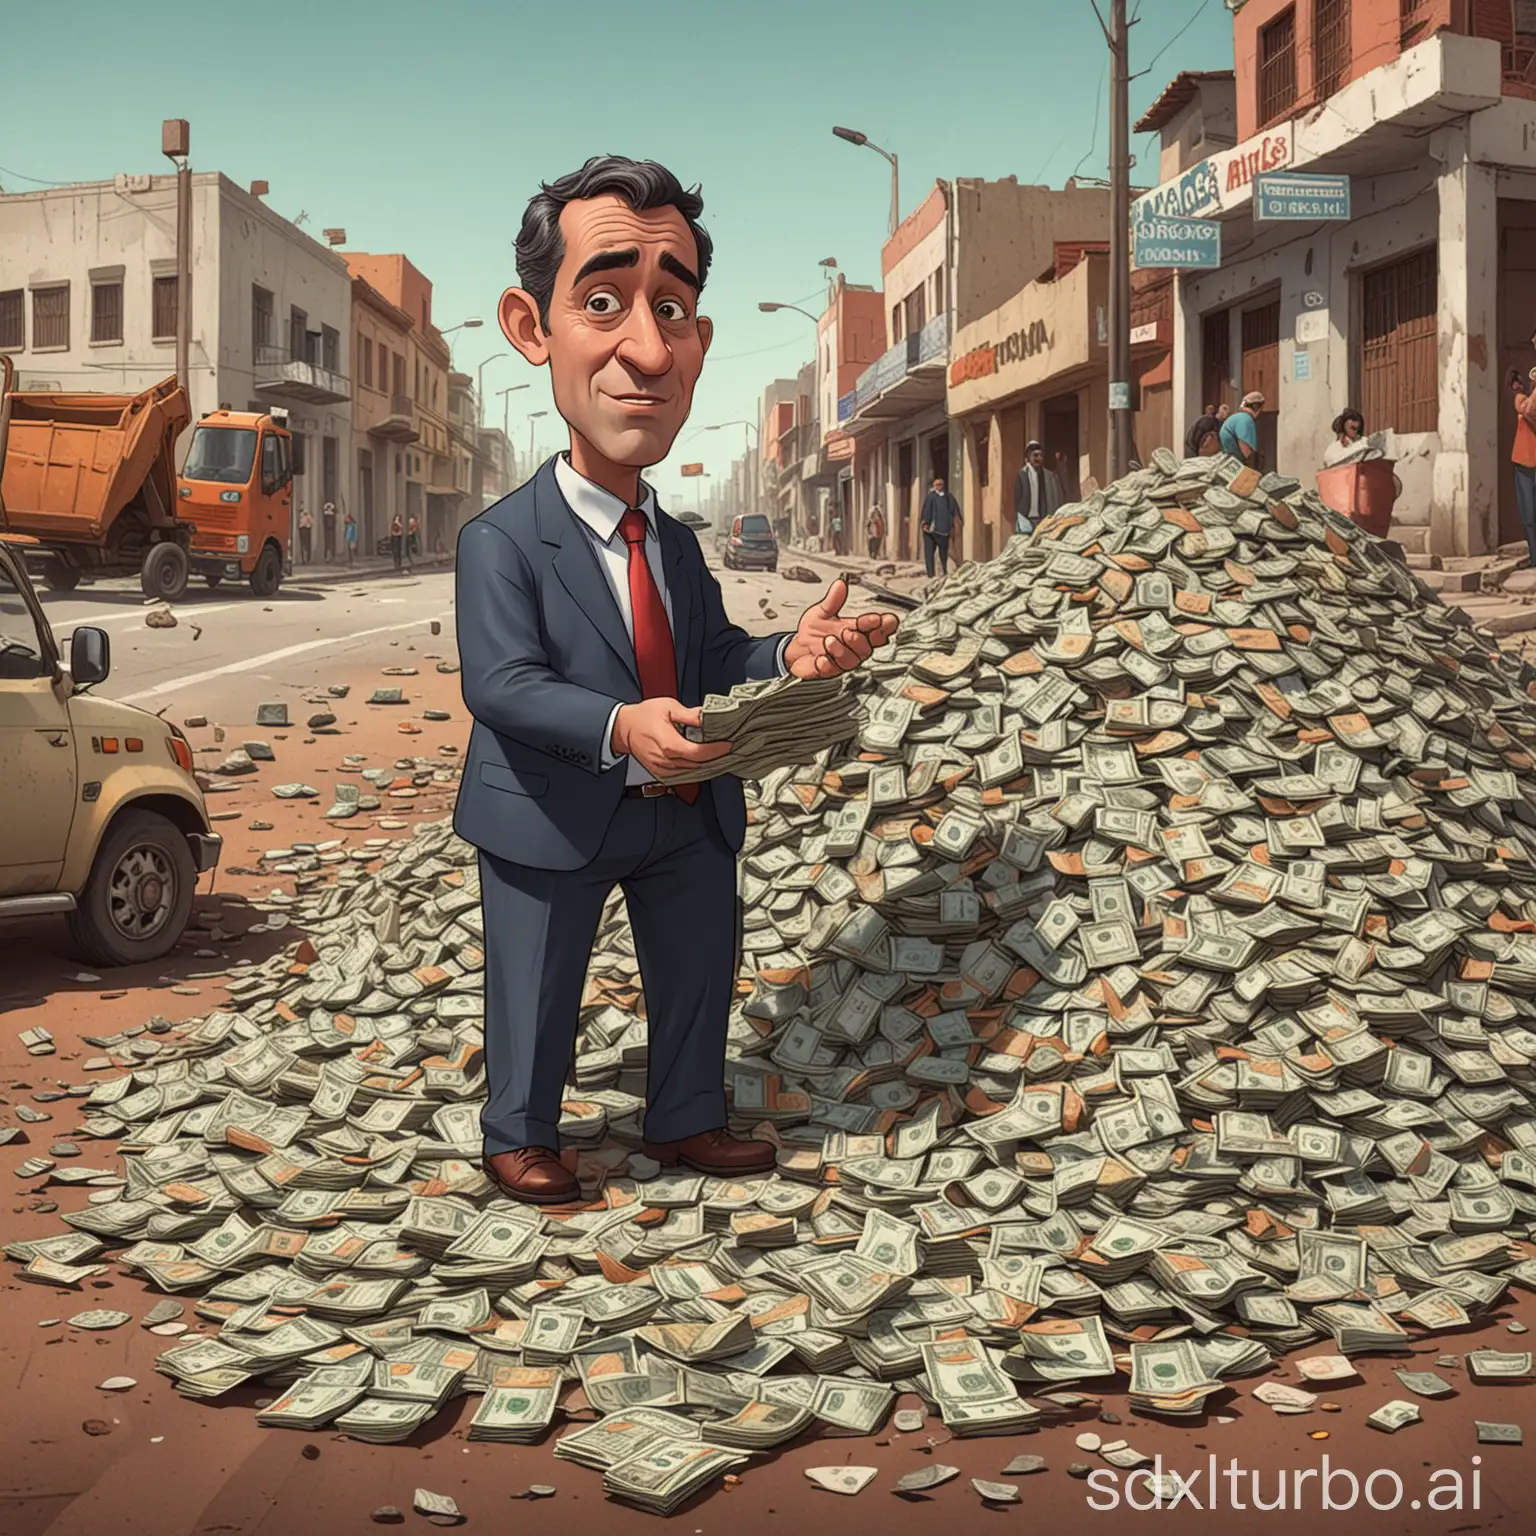 Um gif de alguém contando uma grande pilha de dinheiro, com a legenda "Prefeito Fonseca contando o dinheiro destinado à infraestrutura de Oriximiná", seguido por uma cena de uma rua cheia de buracos.
cartoon style
